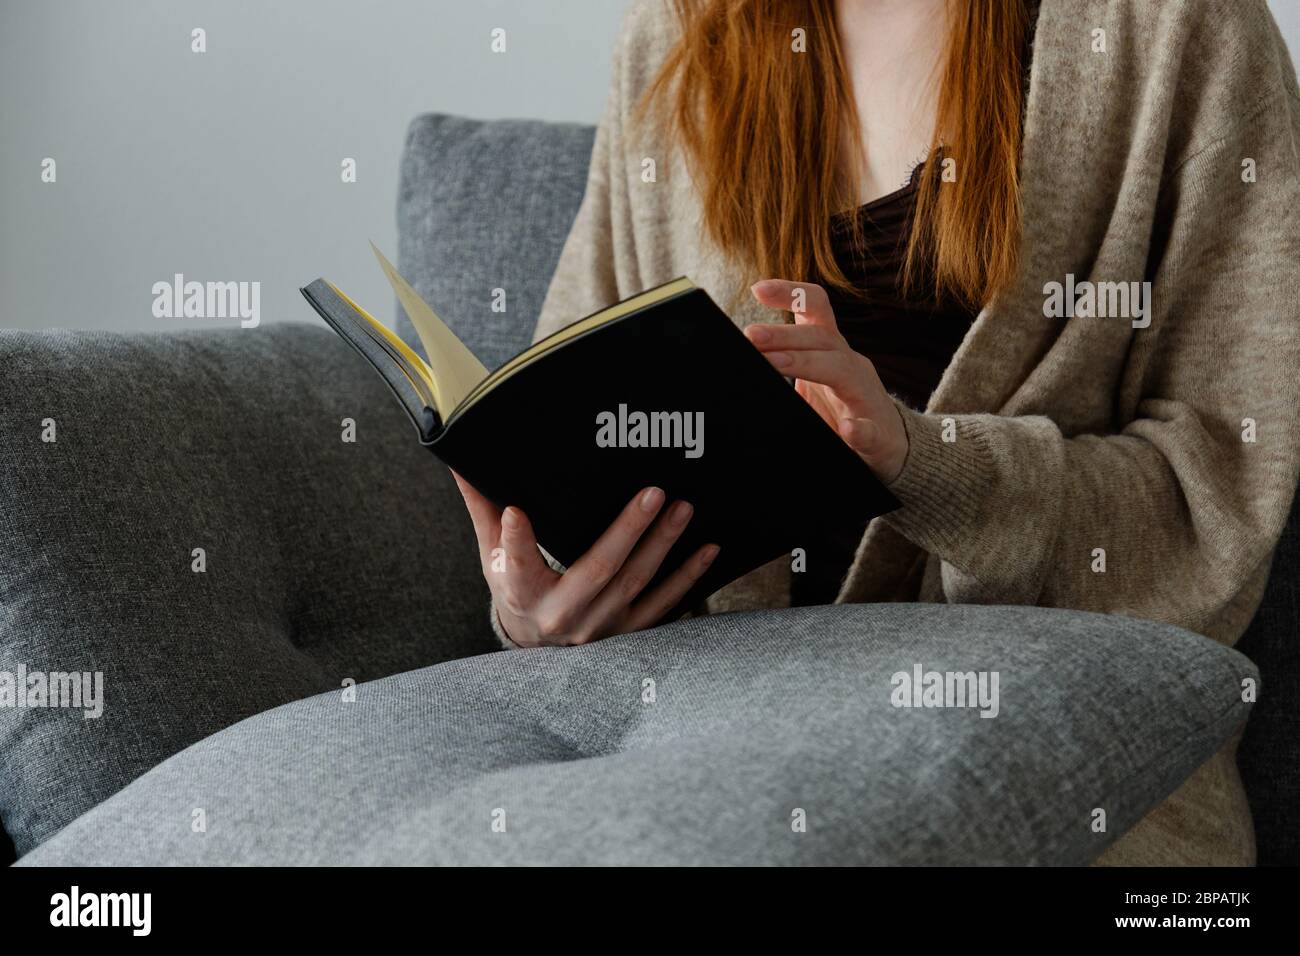 Un livre noir dans les mains d'une fille à cheveux rouges assise sur un canapé. Banque D'Images